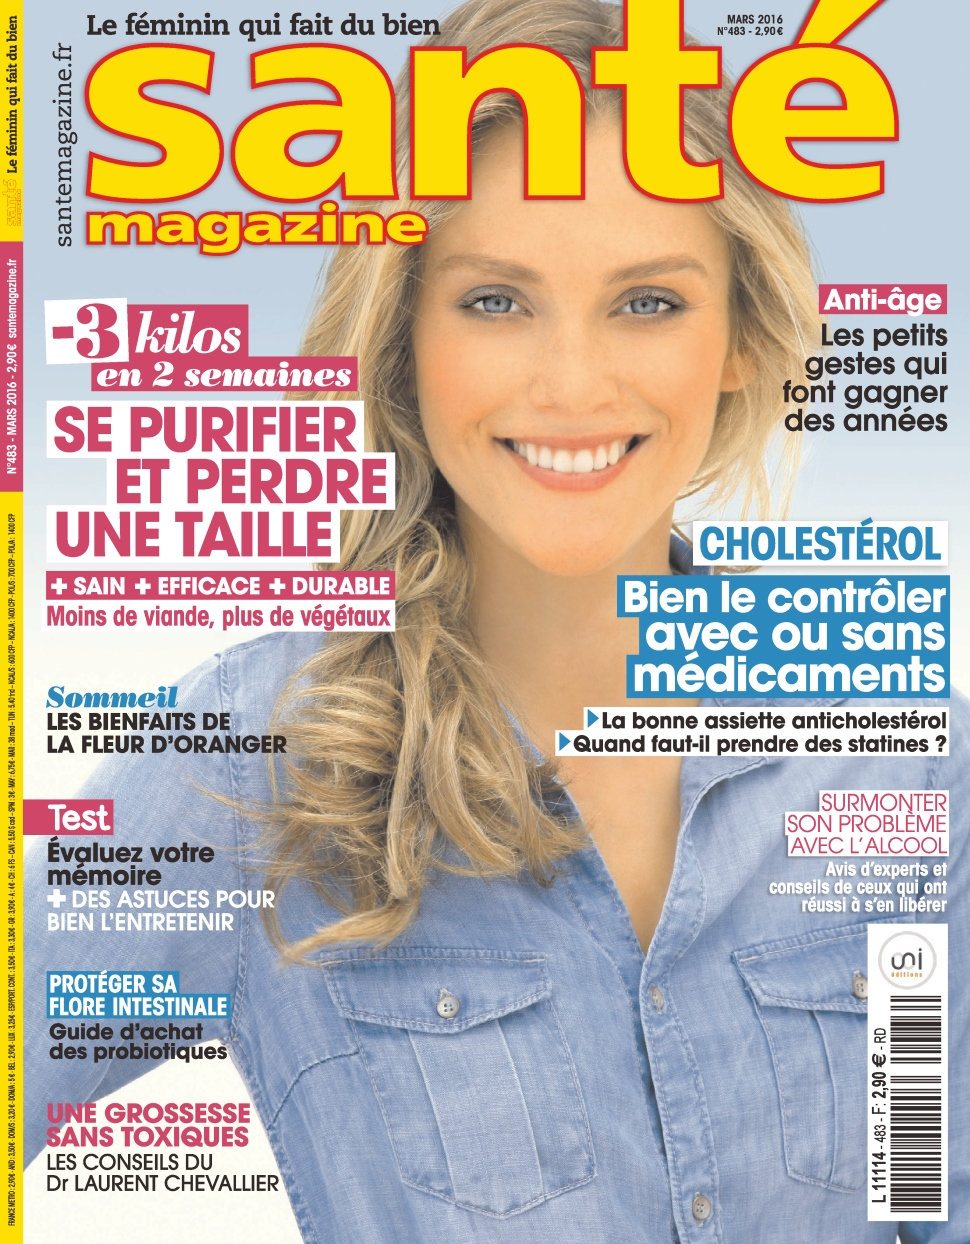 Santé magazine N°483 - Mars 2016